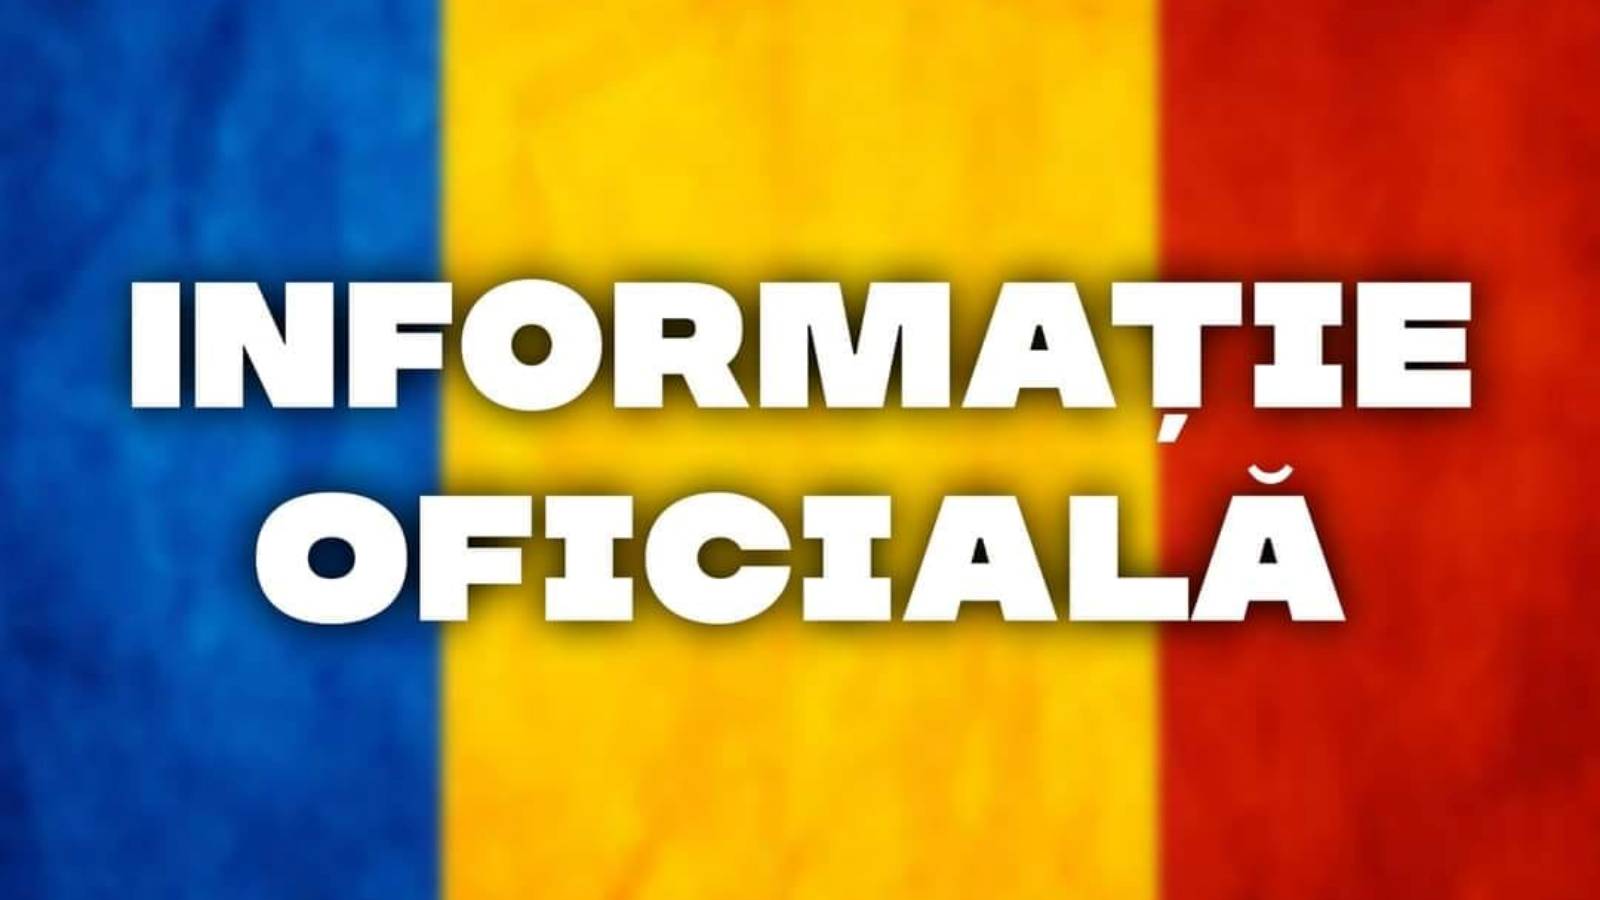 Annuncio ufficiale del Ministero della Difesa ULTIMA VOLTA Azione dell'Esercito Rumeno in Romania